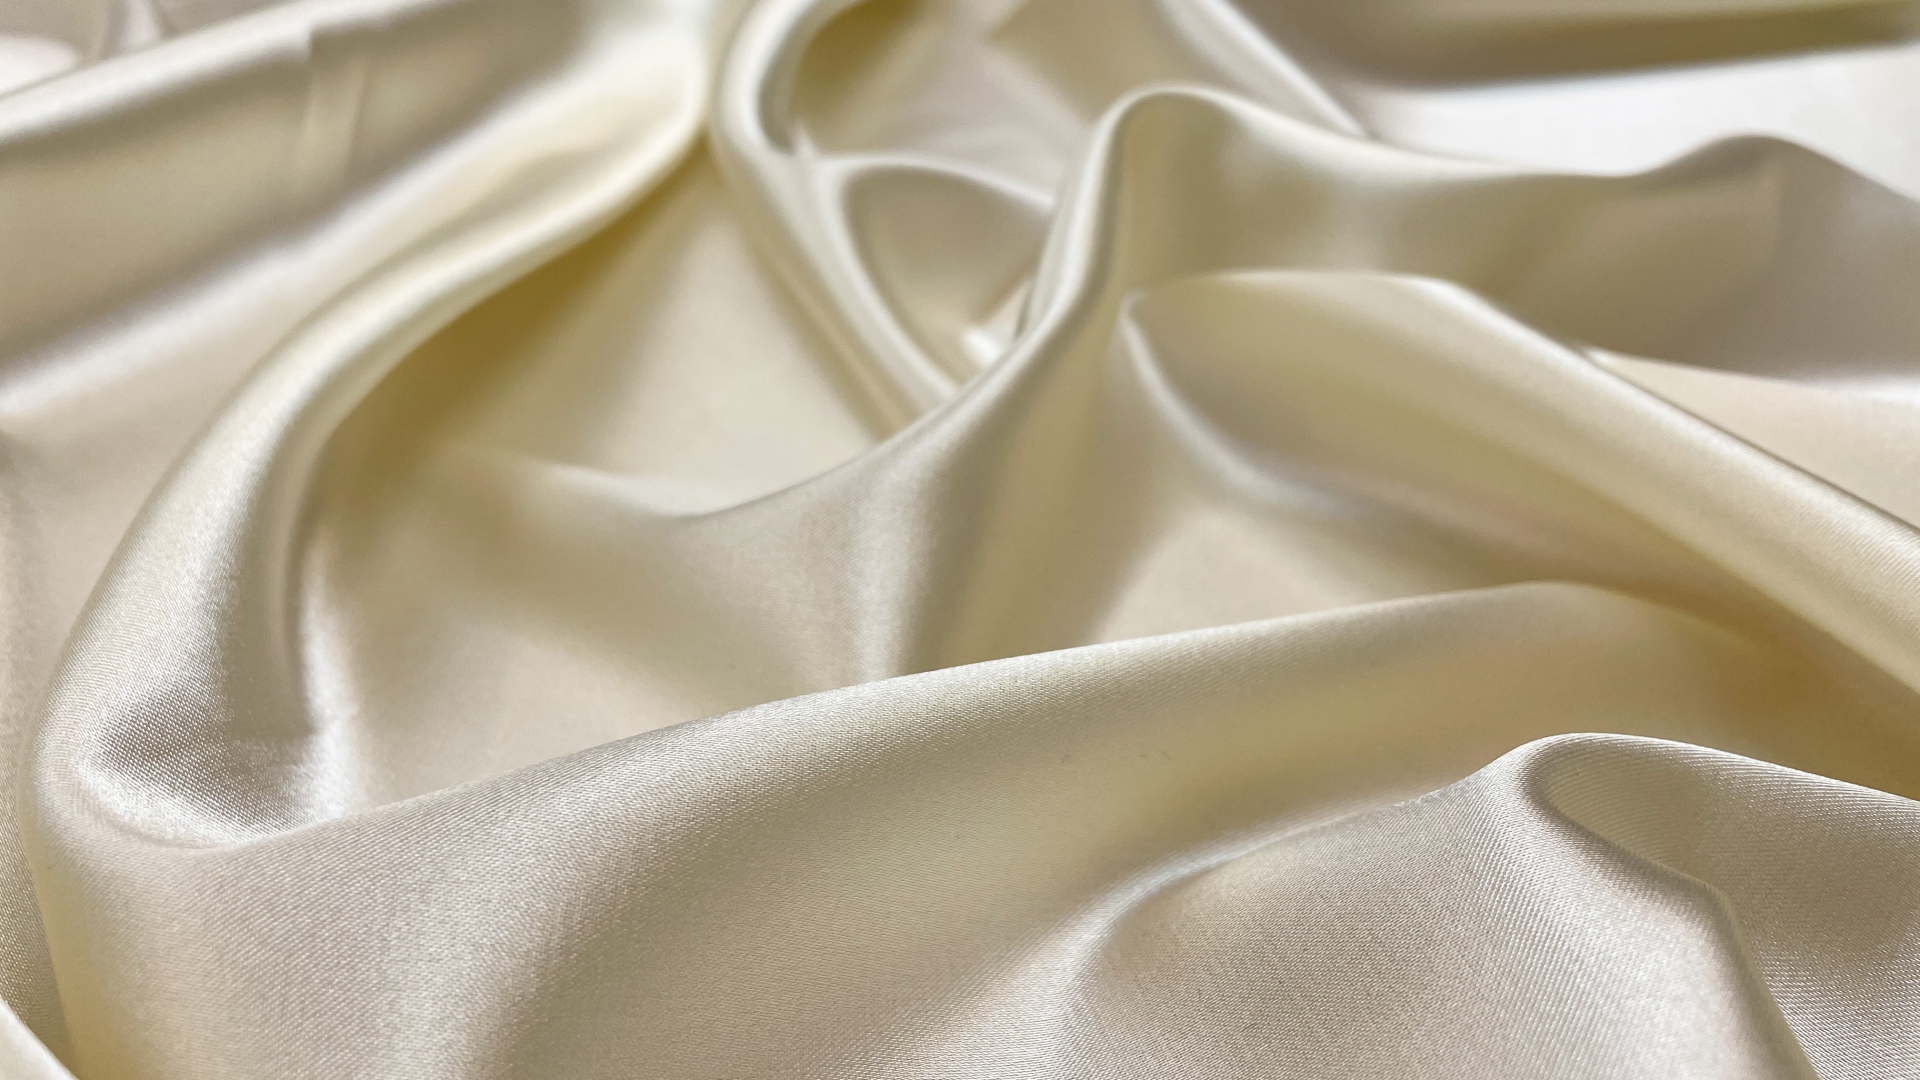 Роскошный атлас из фабричного стока в ванильном цвете с красивым отливом. Идеален для платьев, блузок.